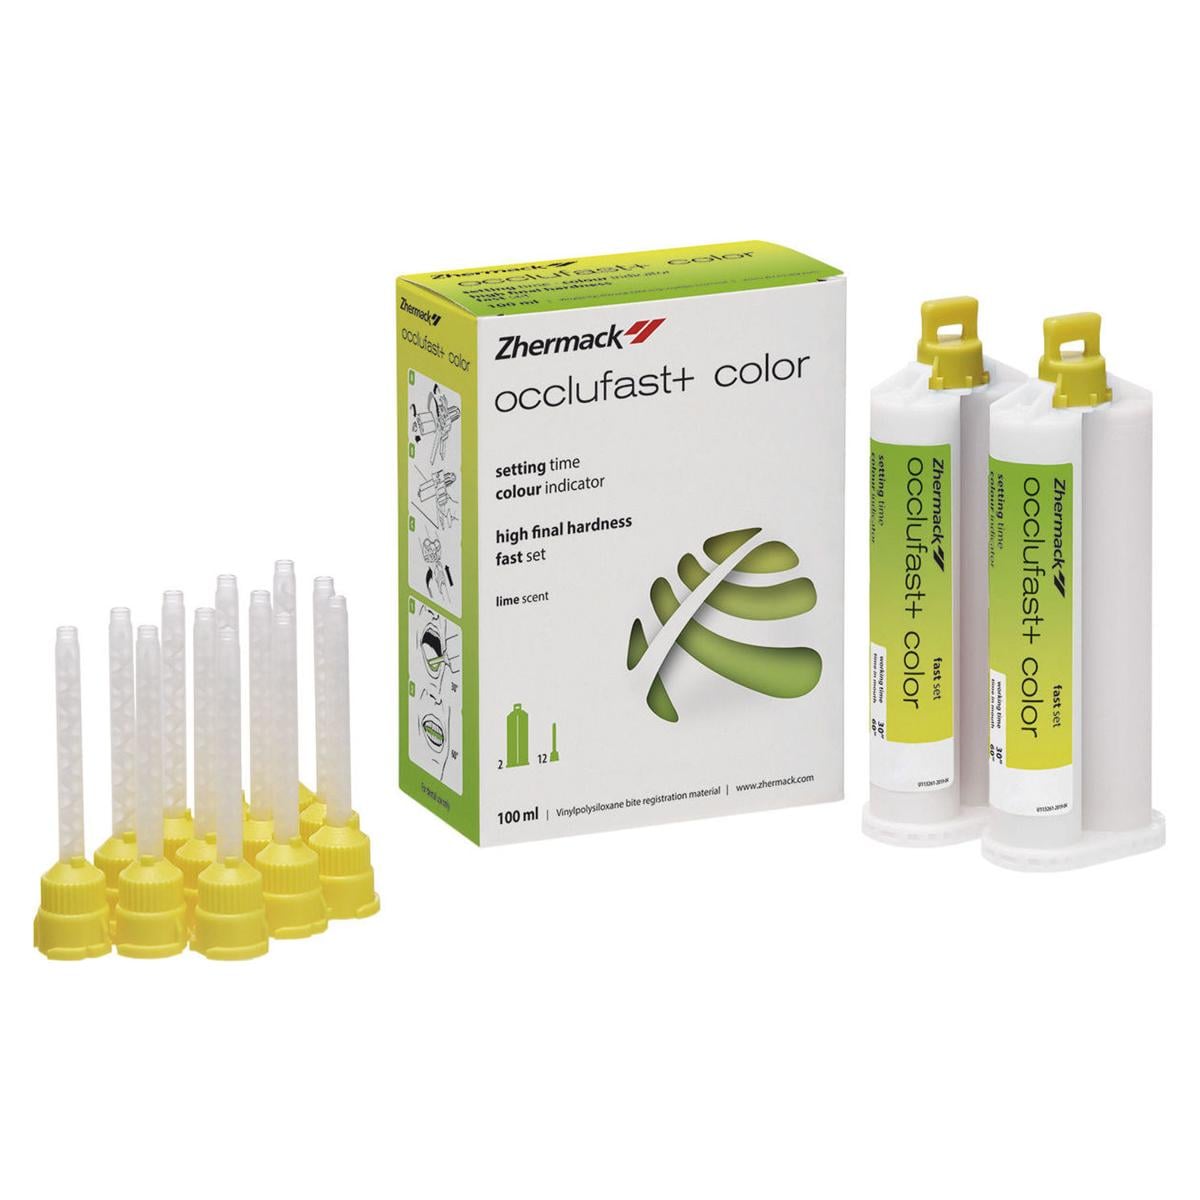 OCCLUFAST+ COLOR (PER MISCELAZIONE MANUALE) - Standard pack: 2 cartucce da 50 ml cad. + 12 puntali miscelatori gialli